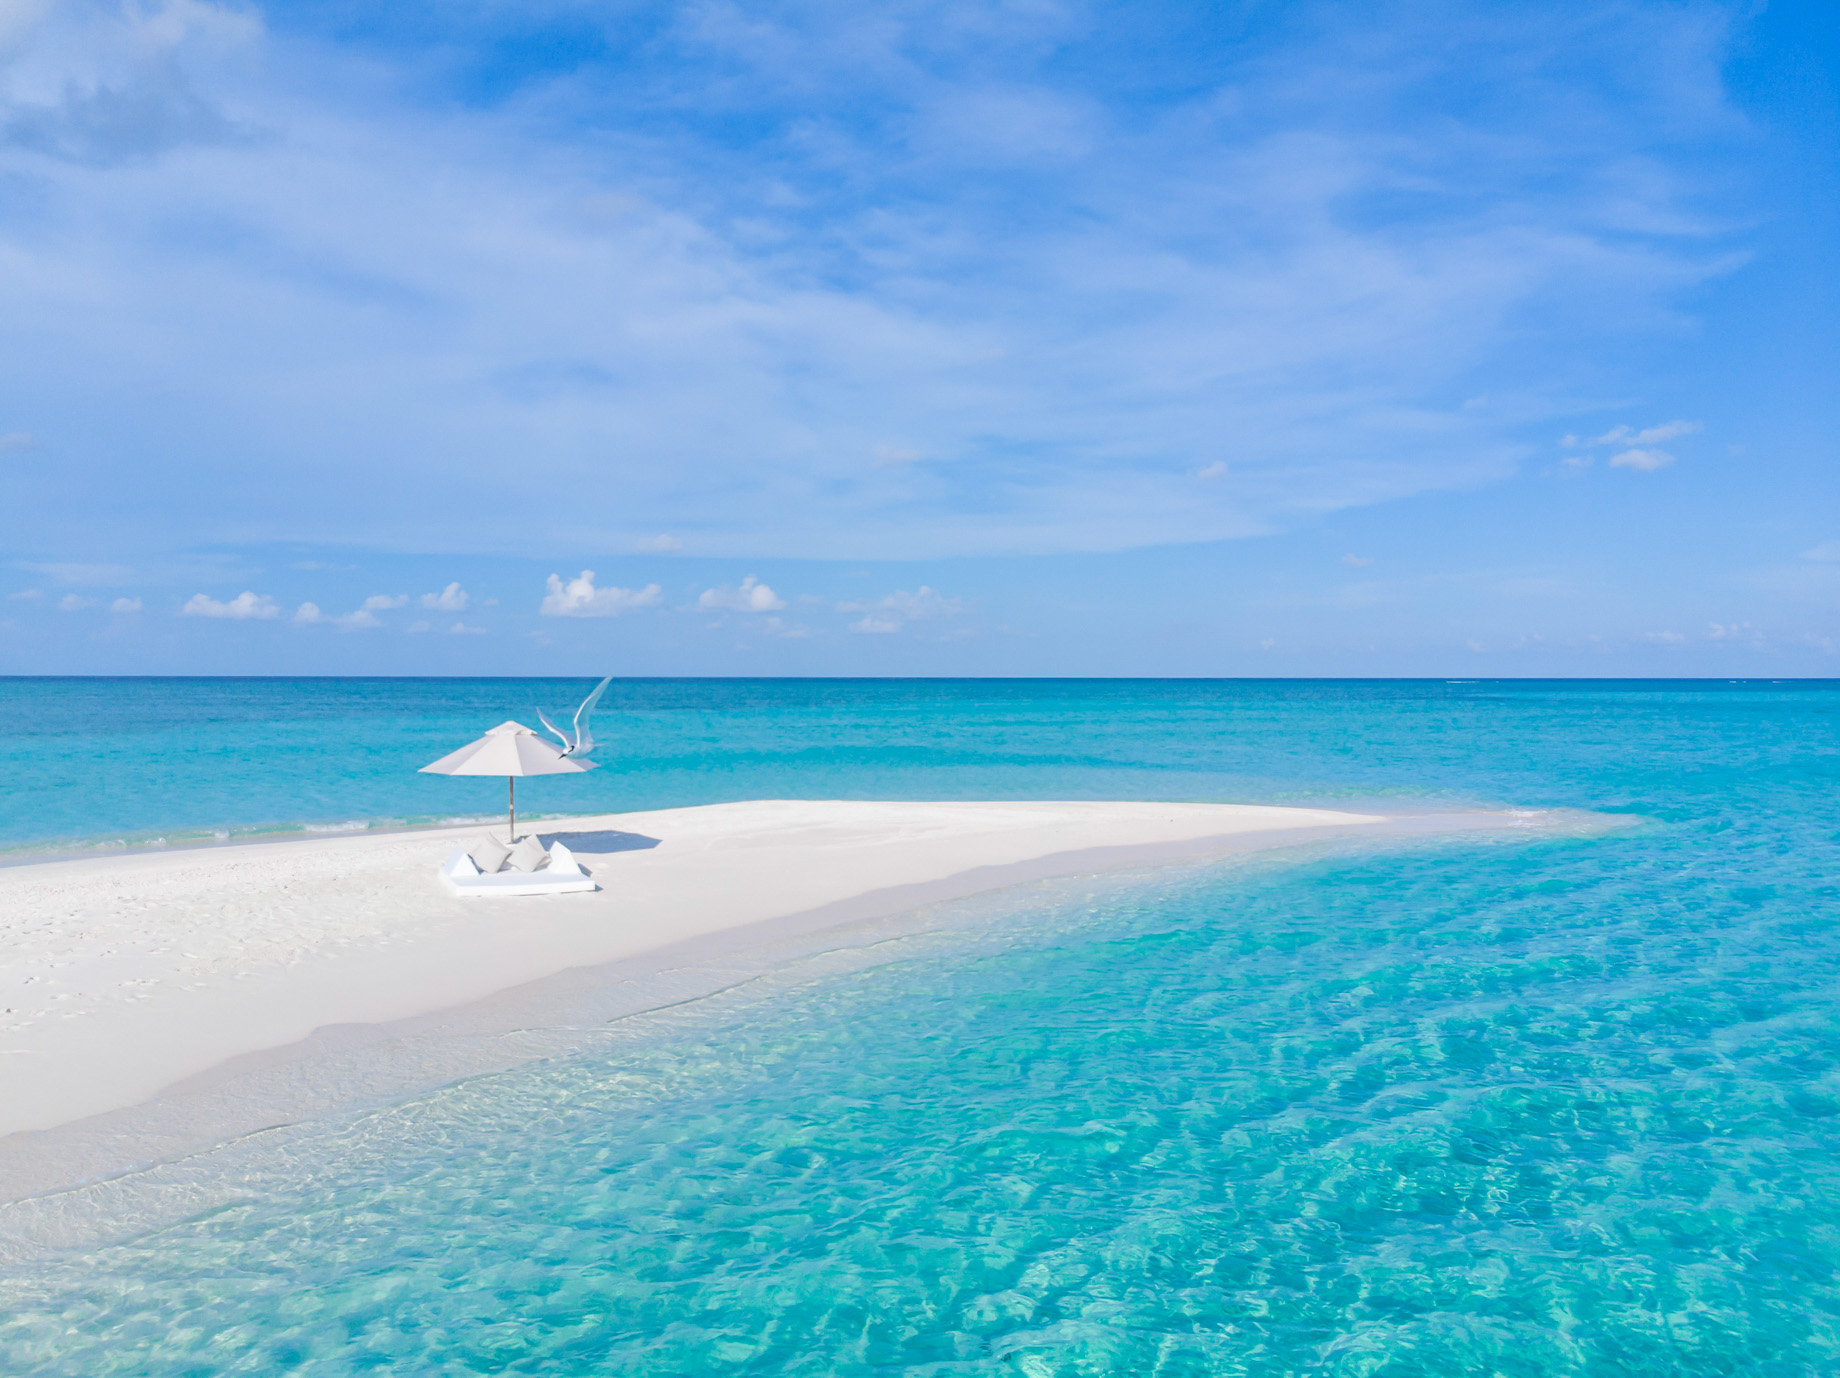 Anantara Kihavah Maldives Villas Resort – Baa Atoll, Maldives – Sand Bank Excursion